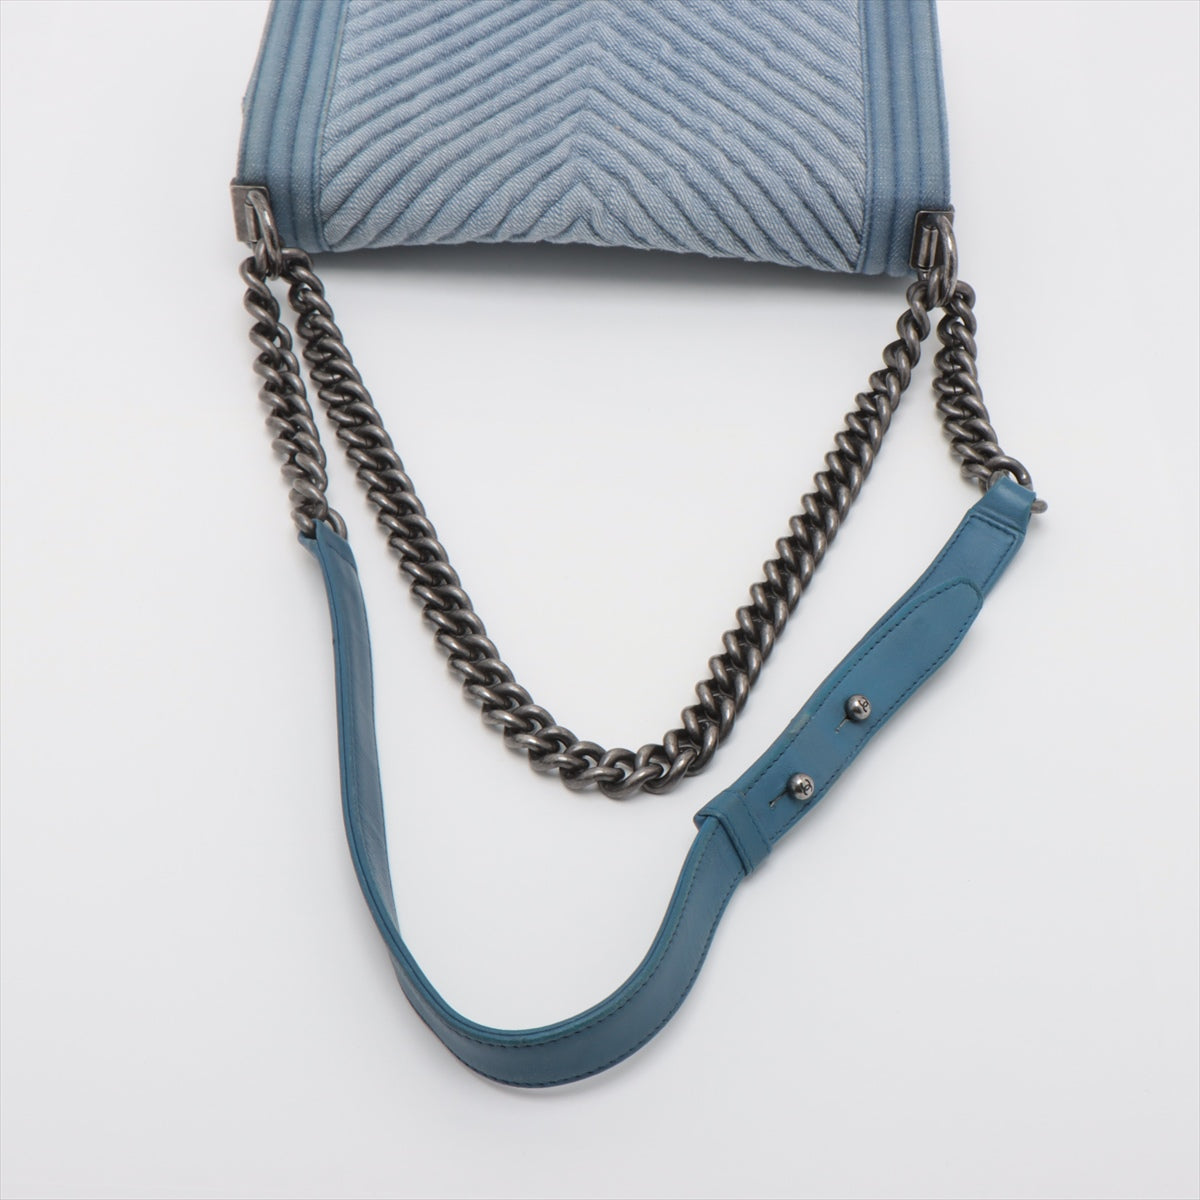 Chanel Boy Chanel Denim Chain shoulder bag Blue Gunmetallic hardware 20XXXXXX